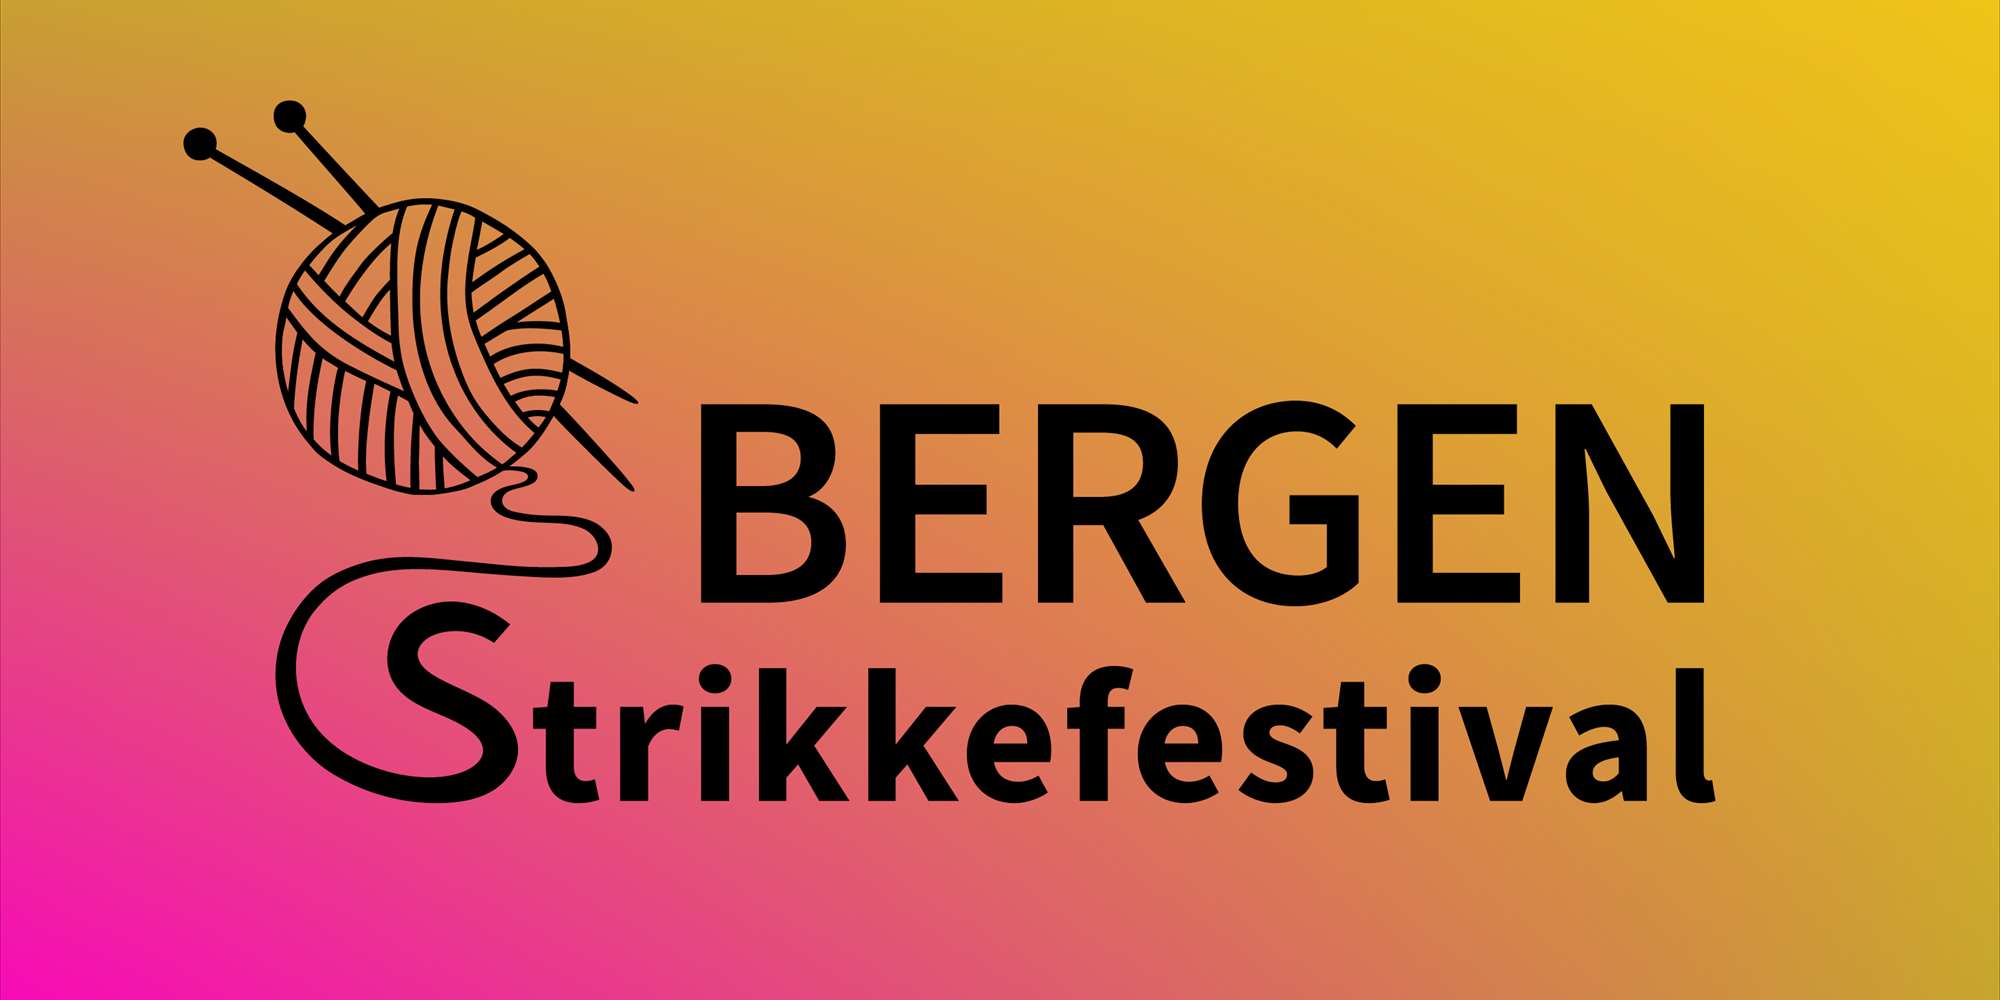 Bergen Strikkefestival